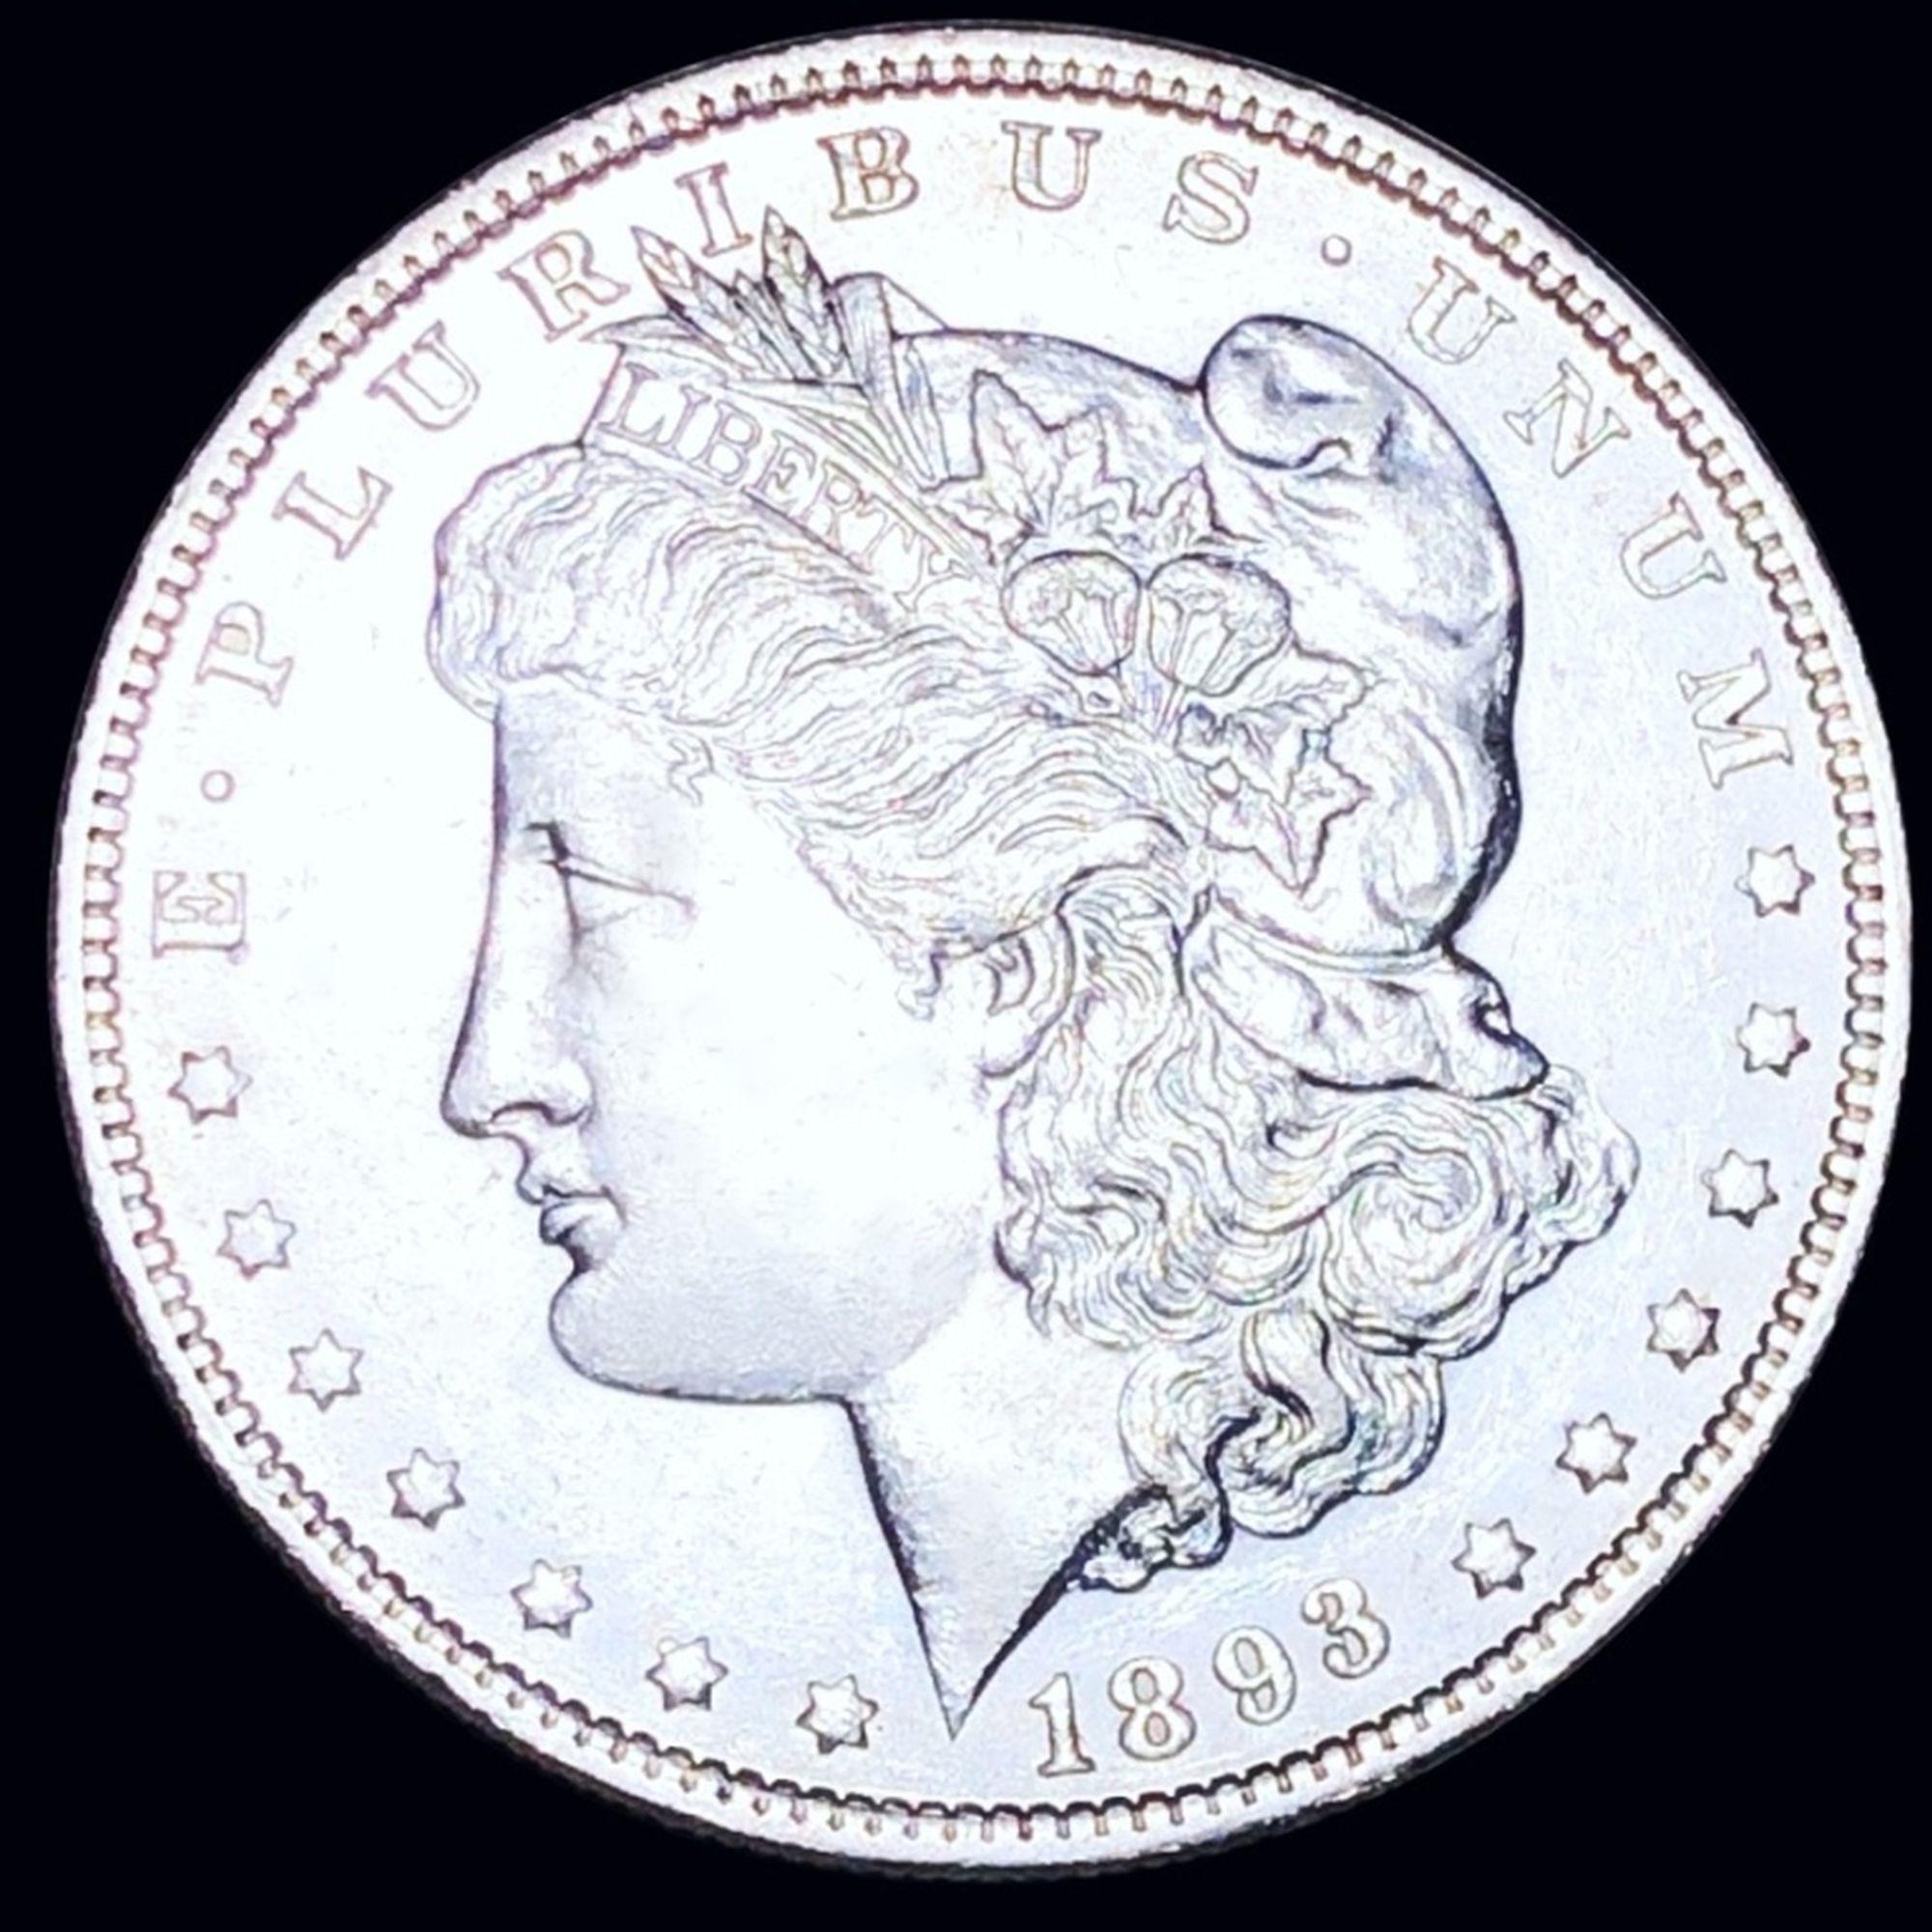 1893-O Morgan Silver Dollar UNCIRCULATED